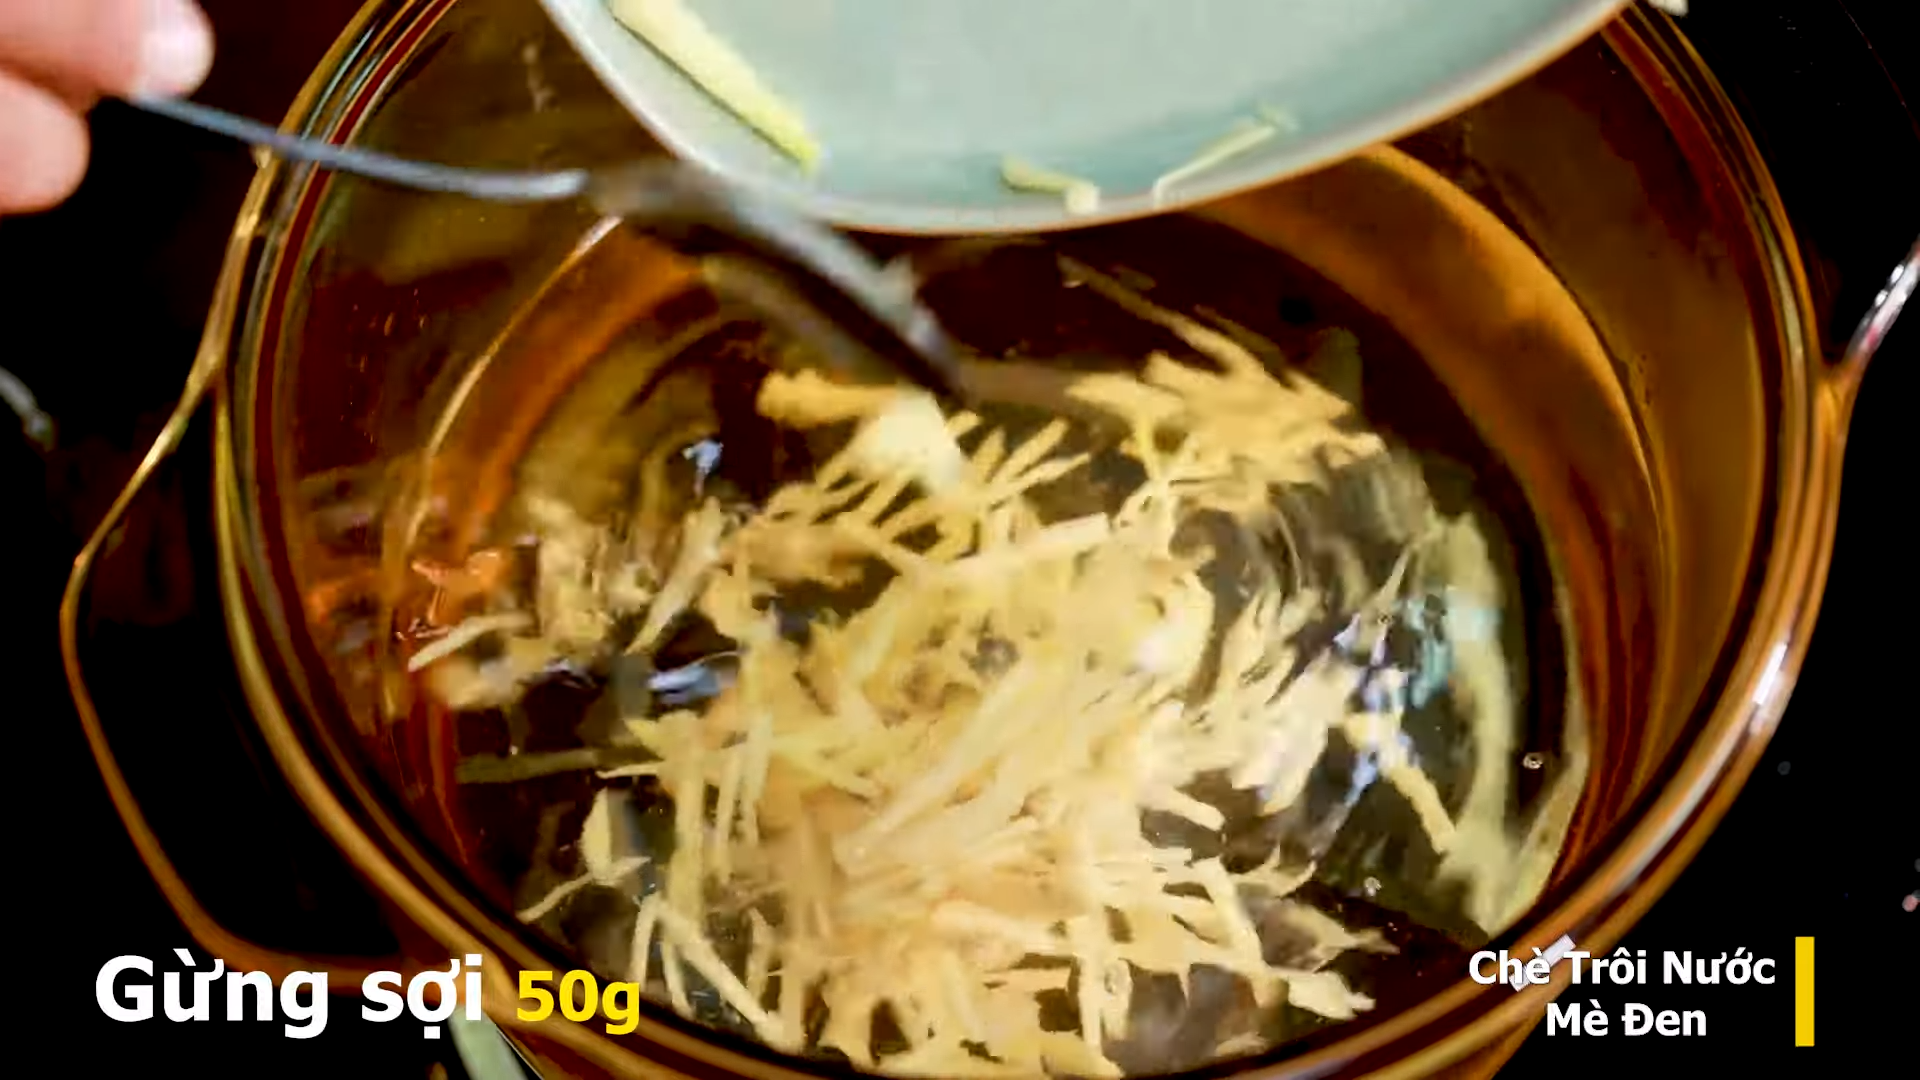 Cách nấu Chè Trôi Nước Khổ Qua Mè Đen mềm dẻo - không bị cứng kiểu Hoa